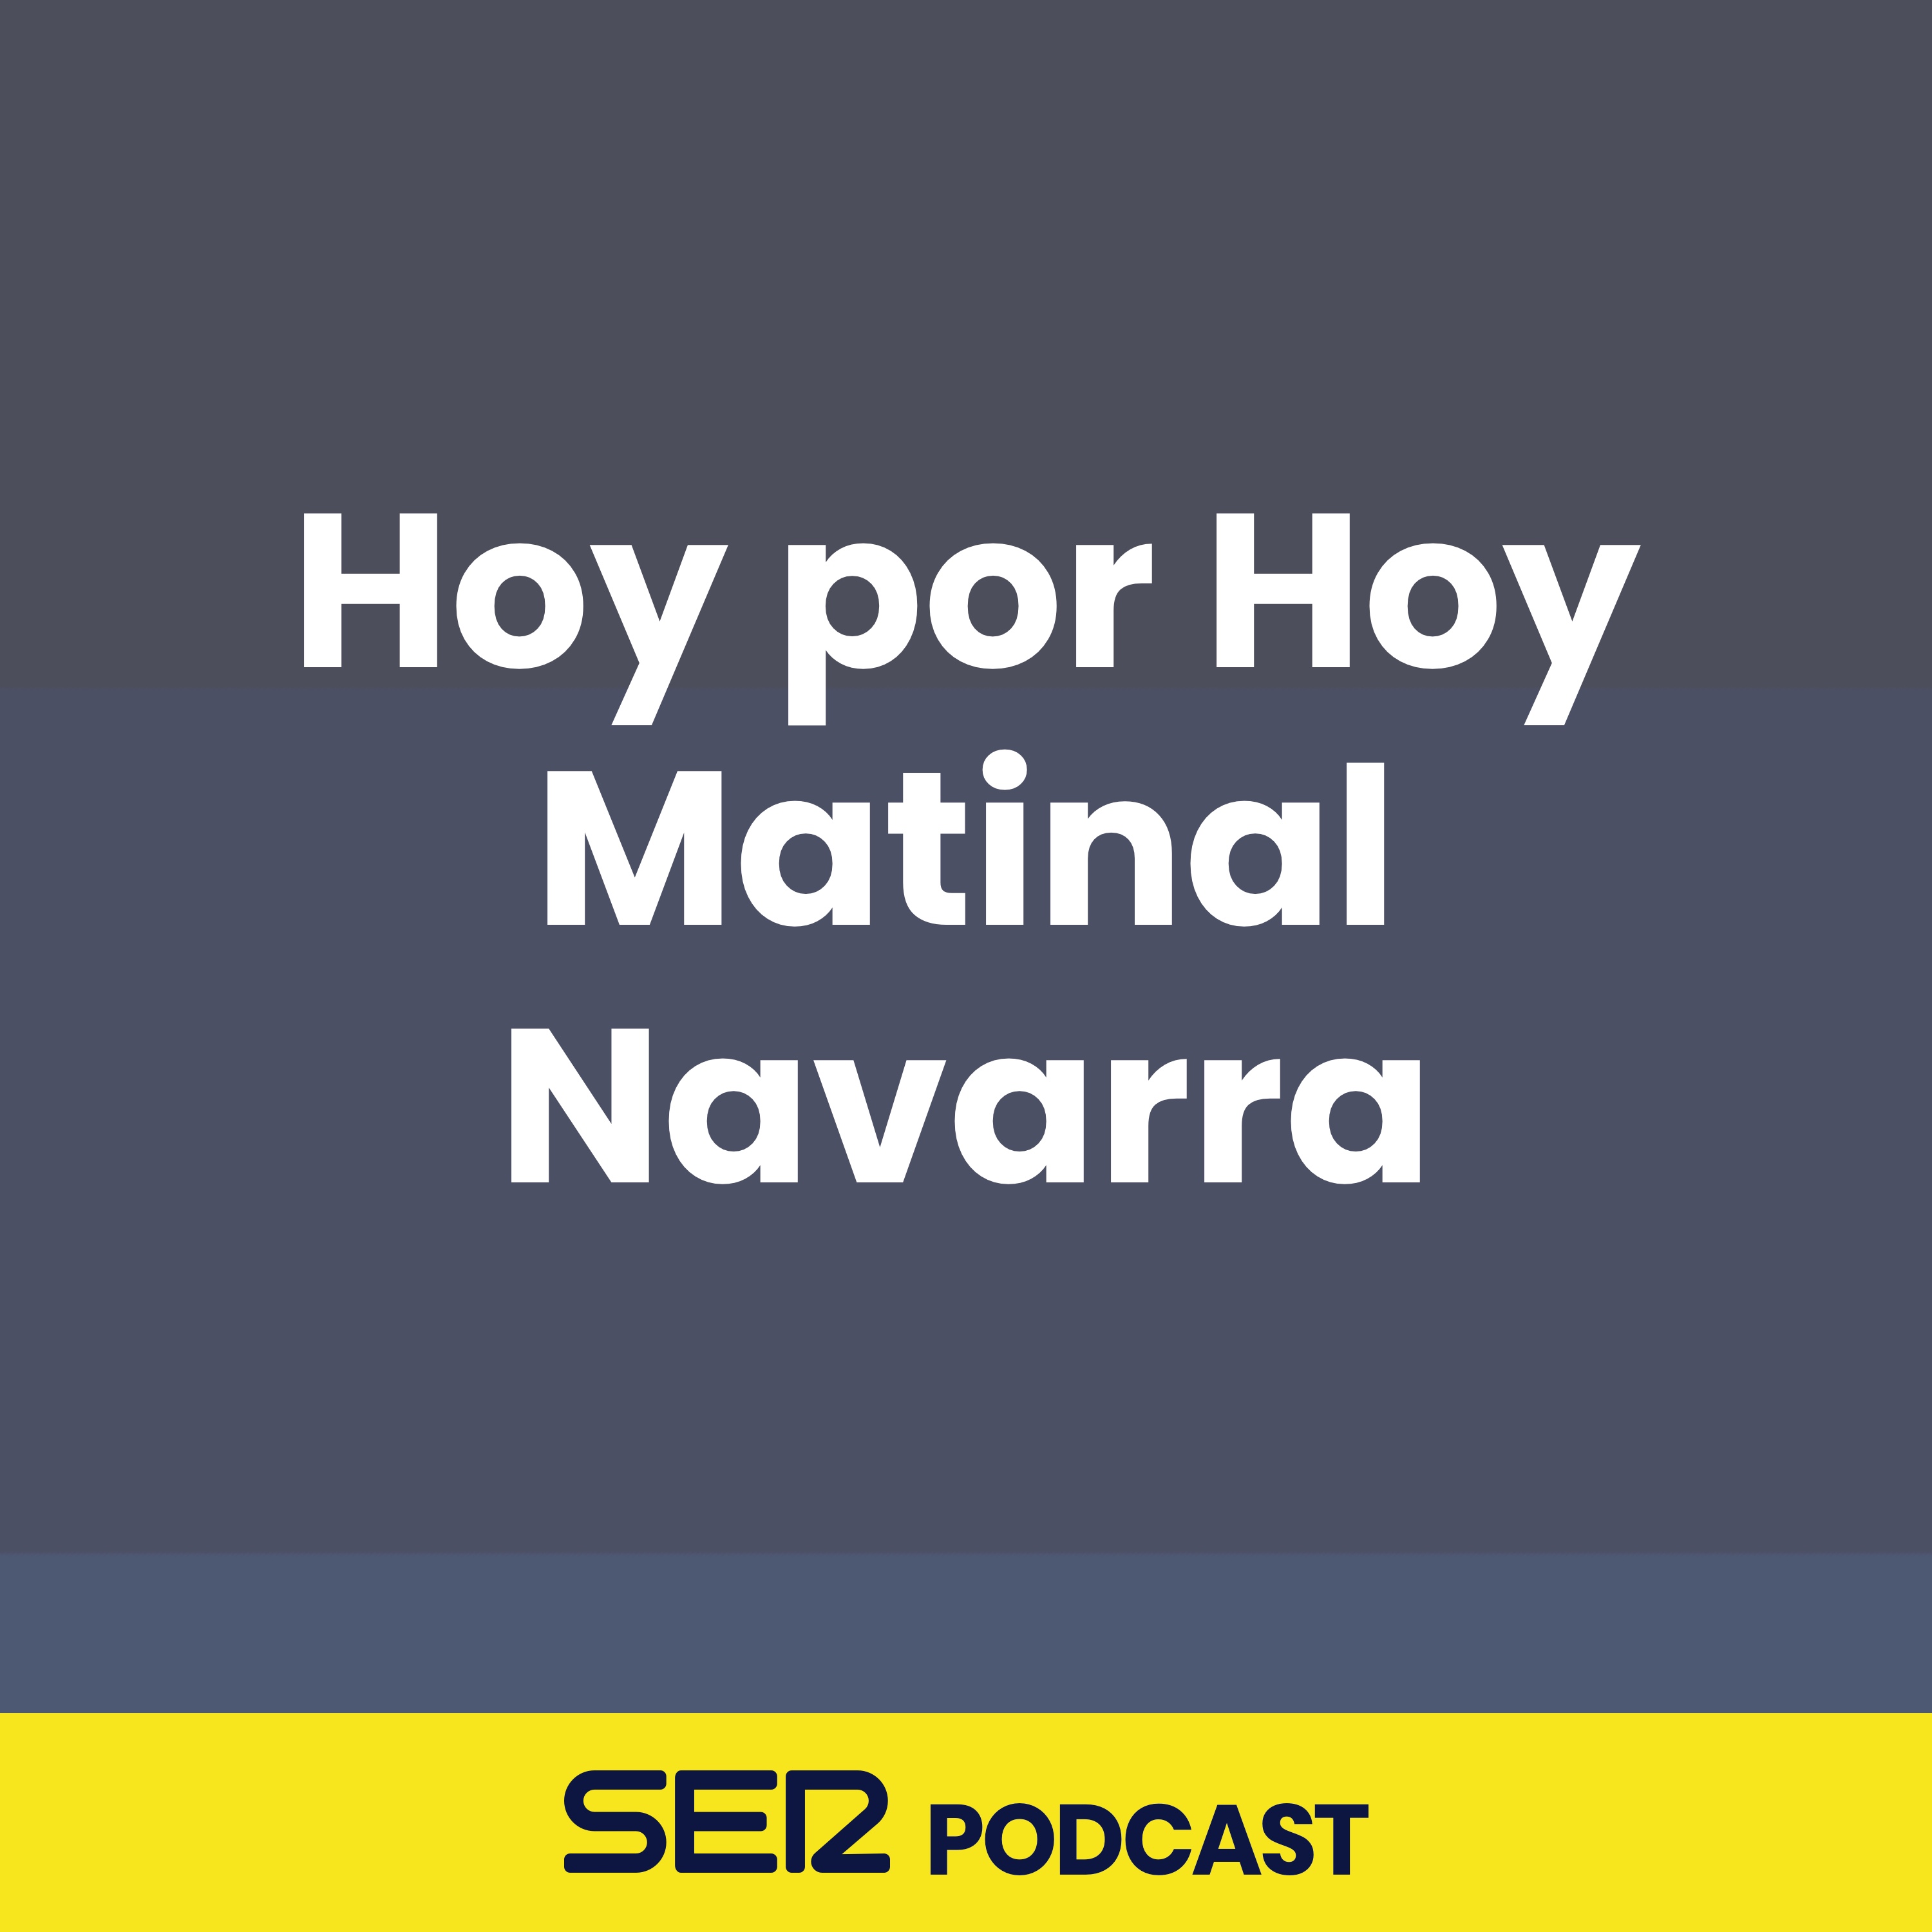 Hoy por Hoy Matinal Navarra